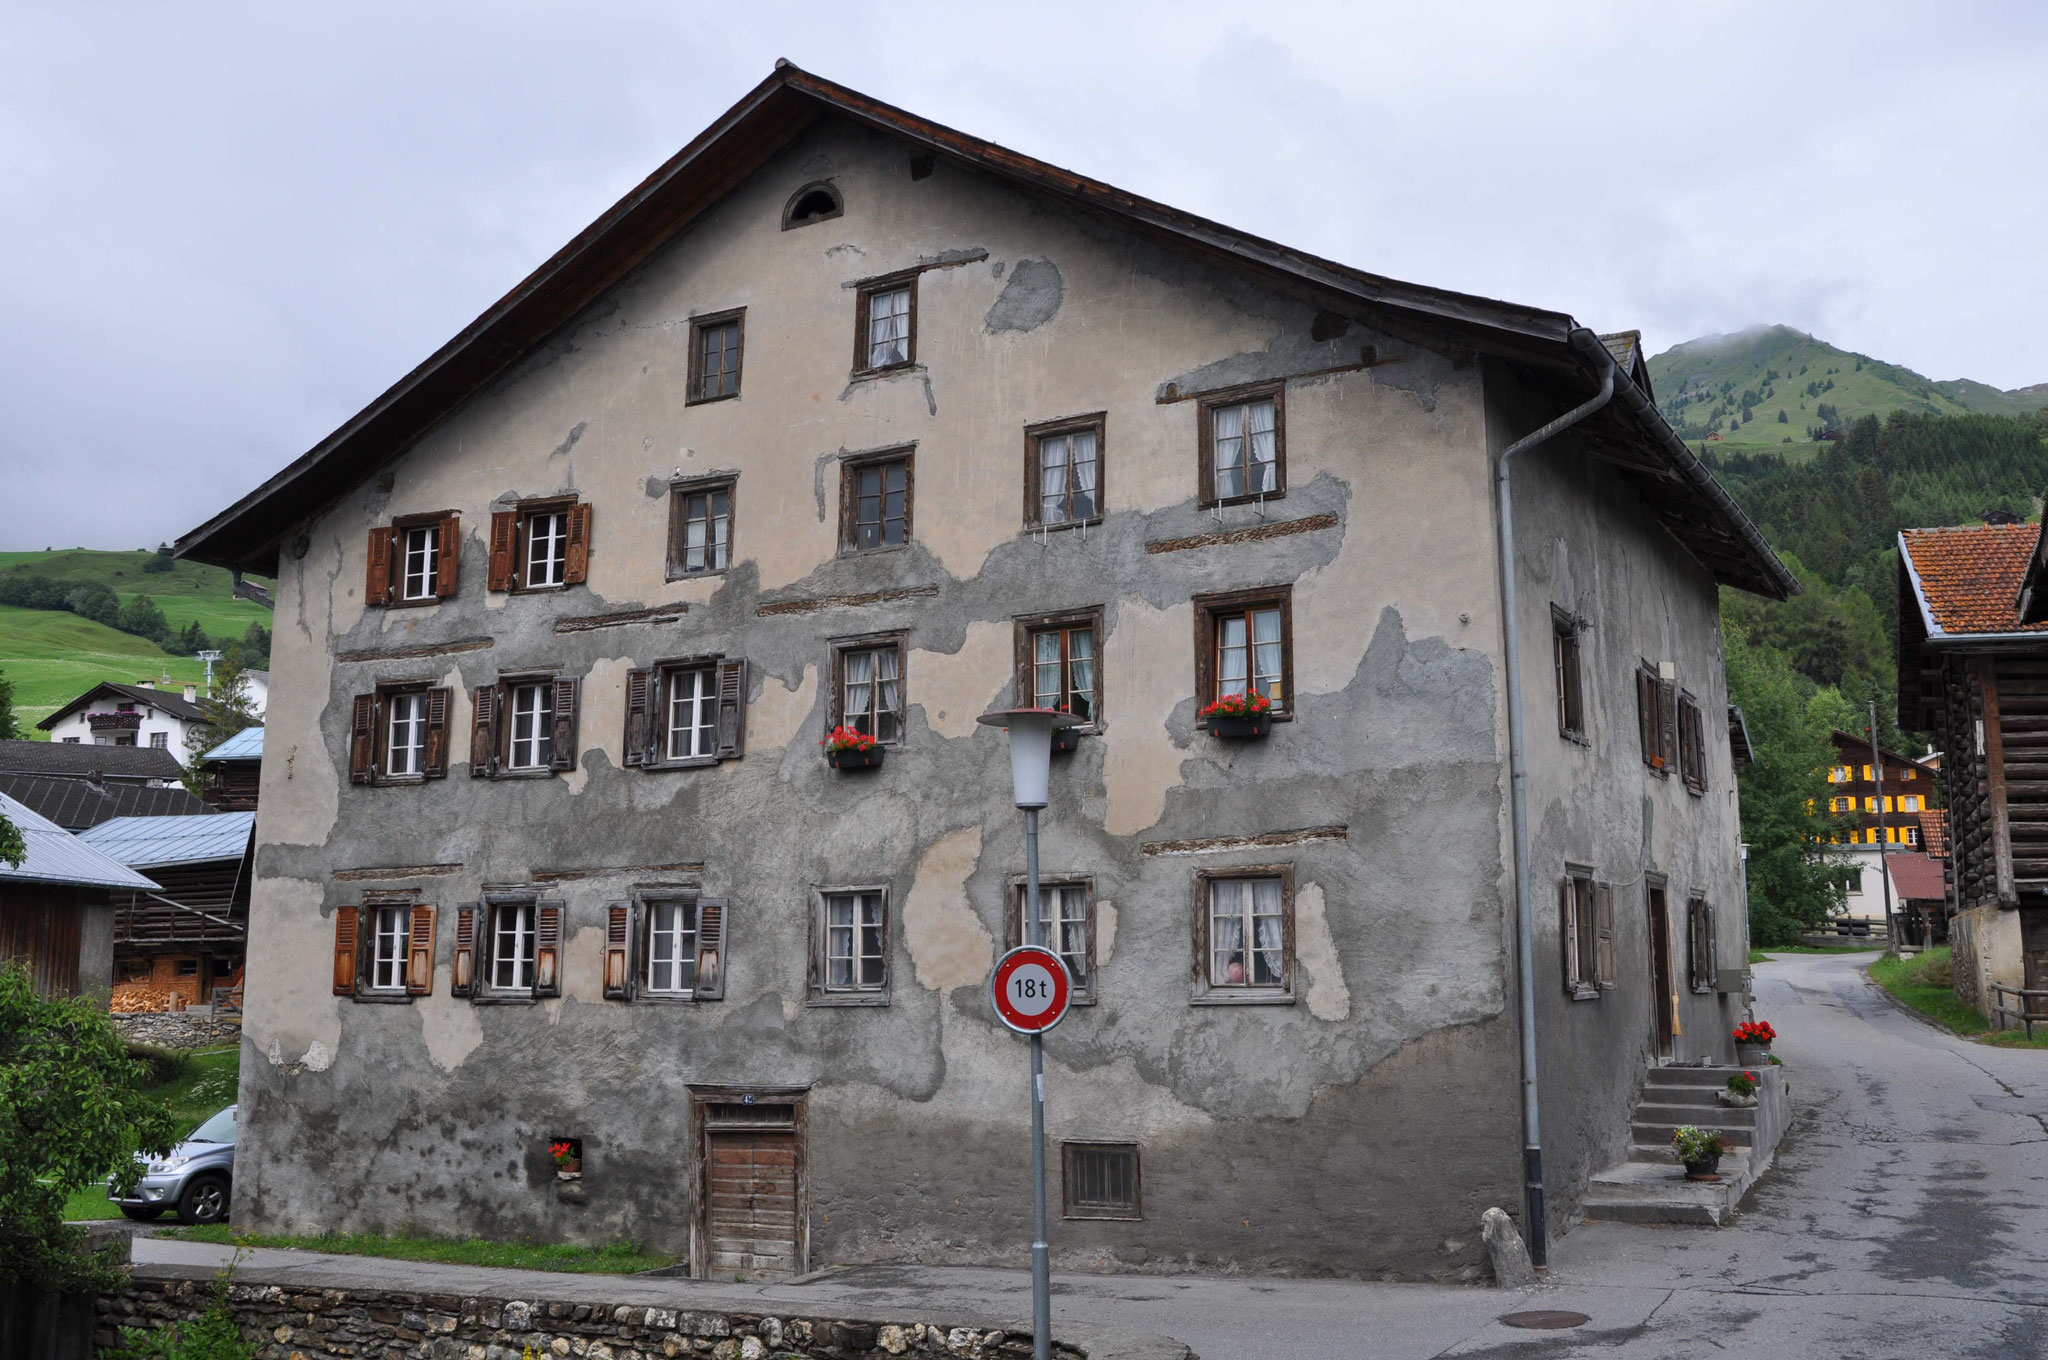 Casa Grischa in 2016